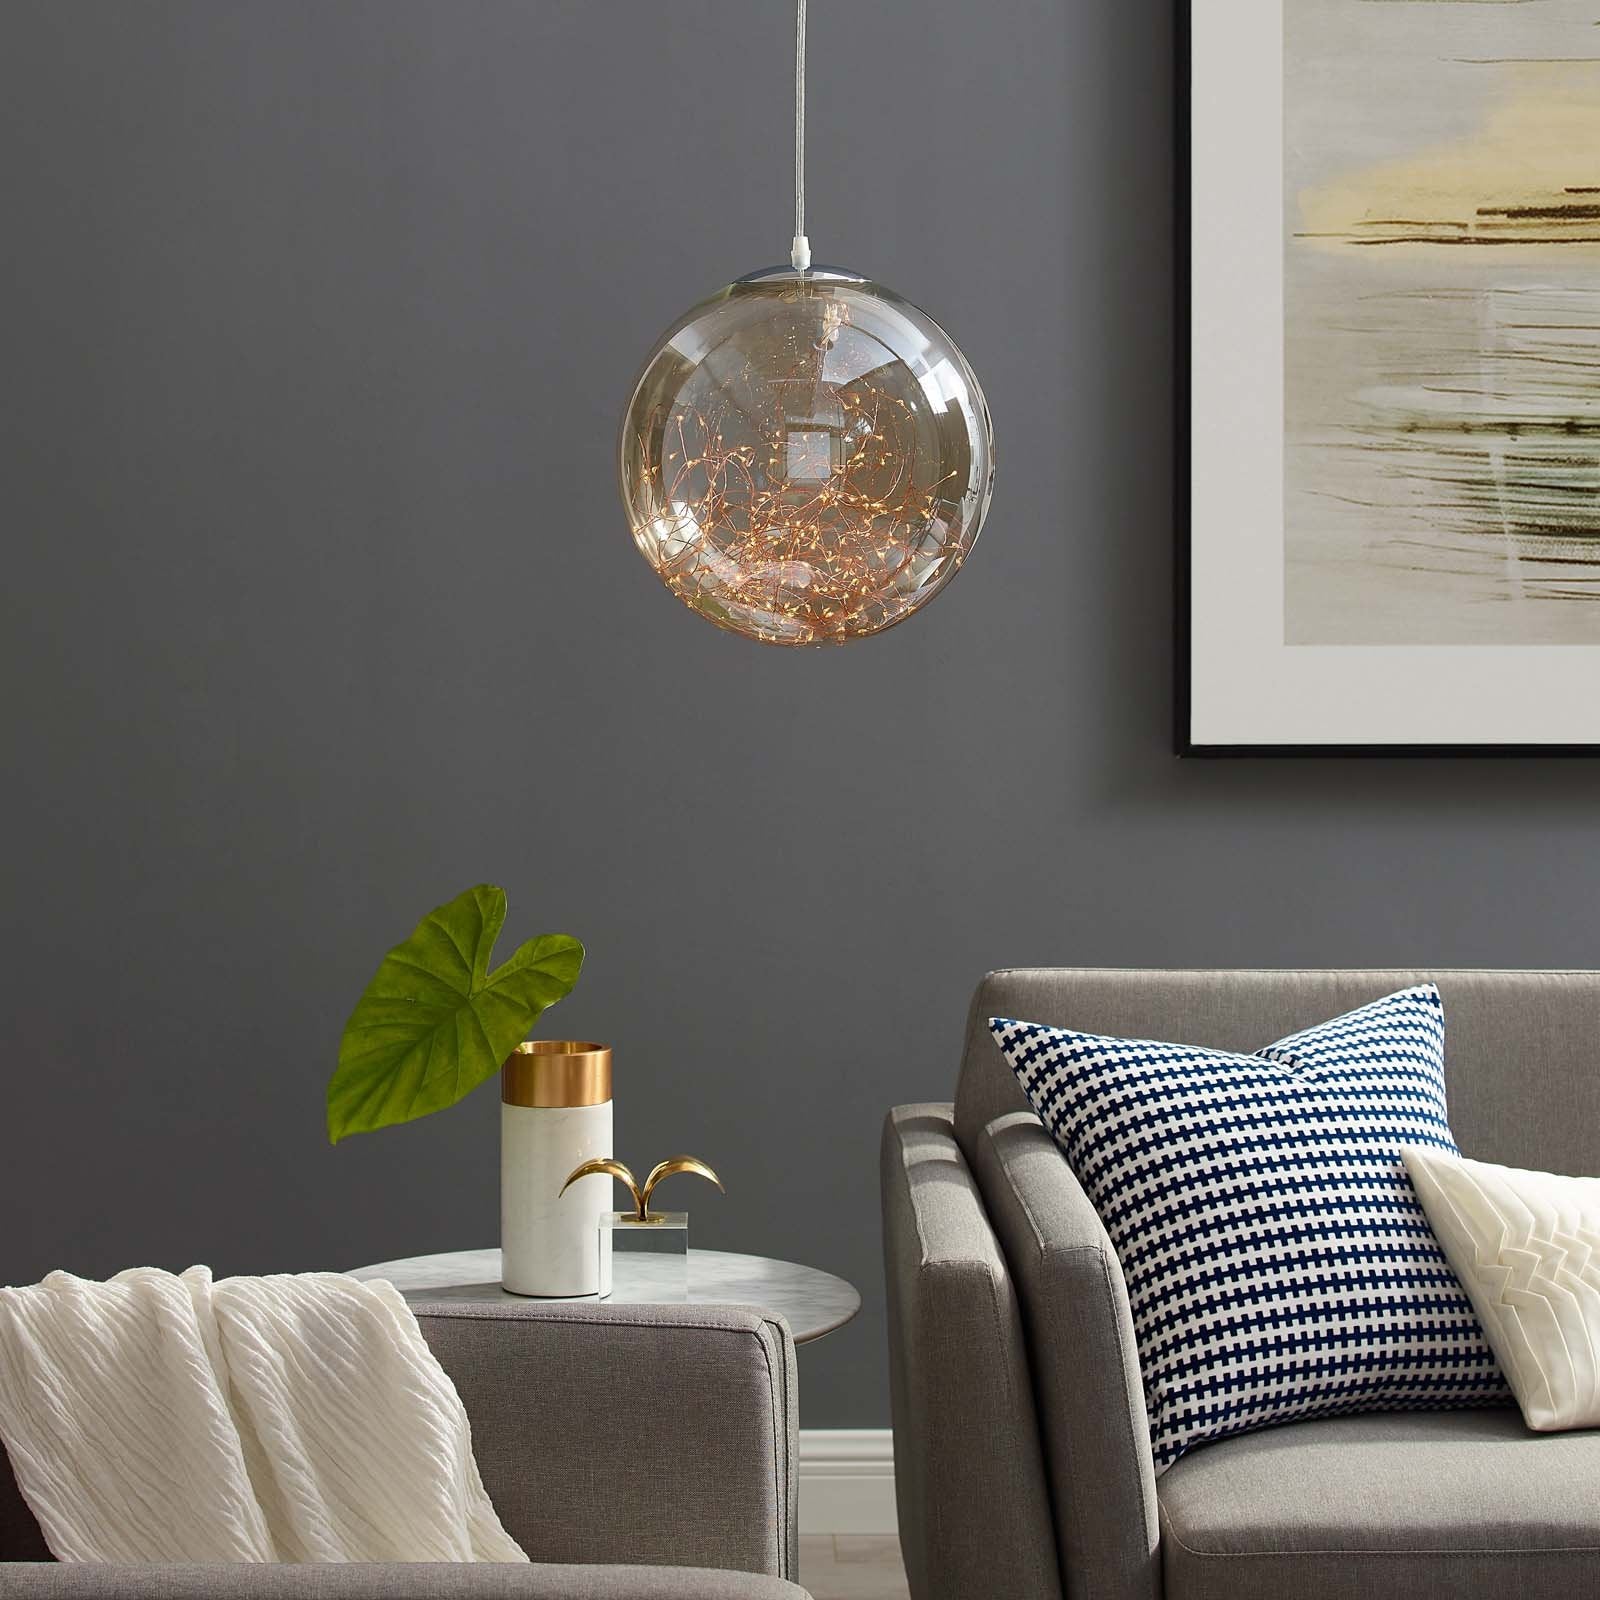 Fairy 8" Amber Glass Globe Ceiling Light Pendant Chandelier - East Shore Modern Home Furnishings